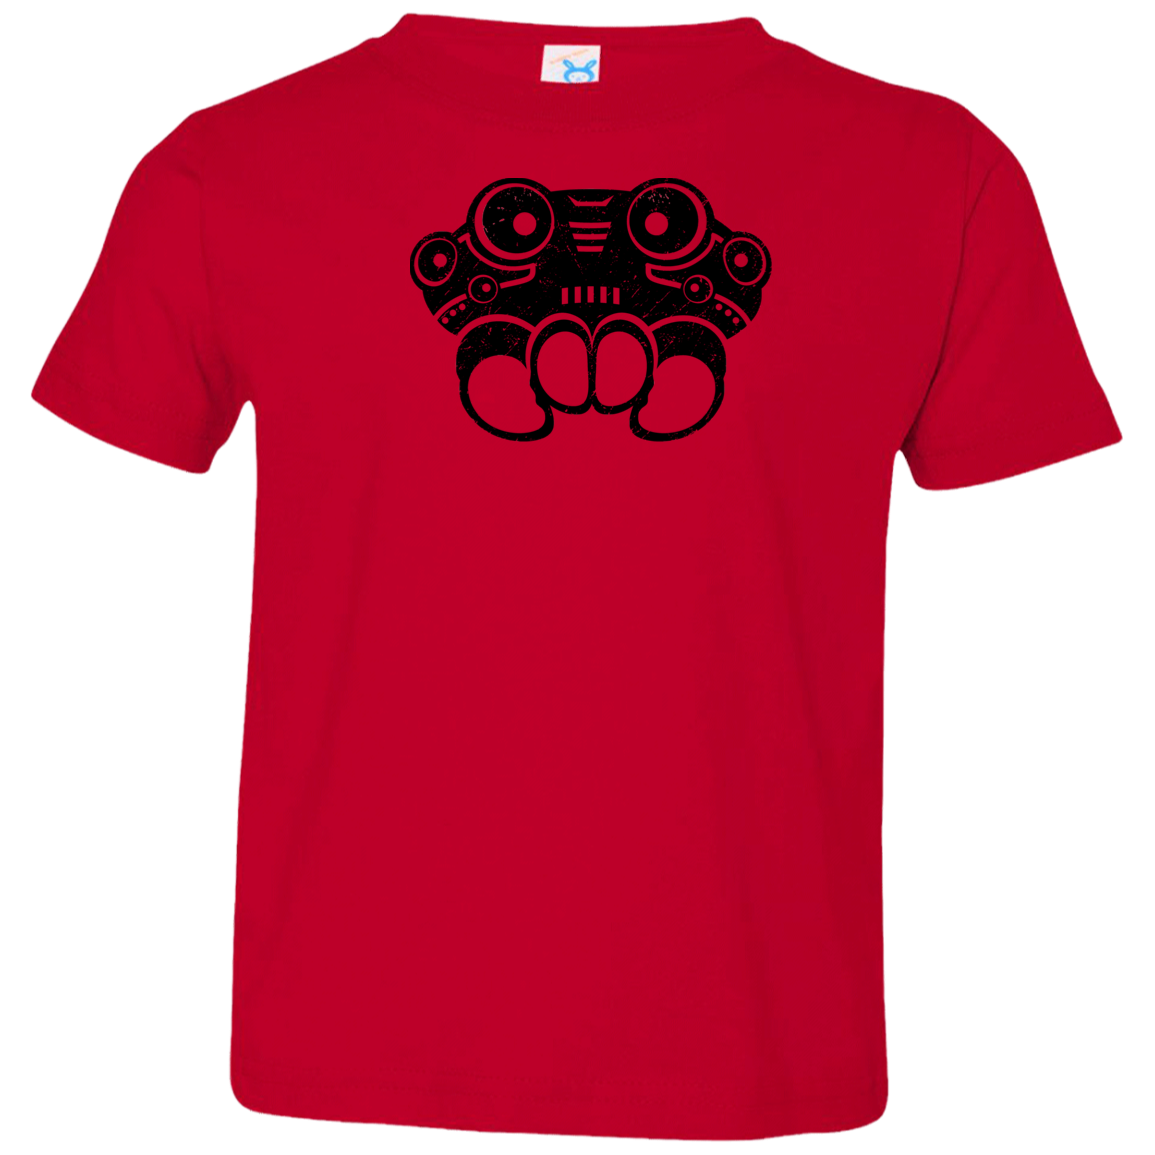 Black Distressed Emblem T-Shirt for Toddlers (Spider/Webber)